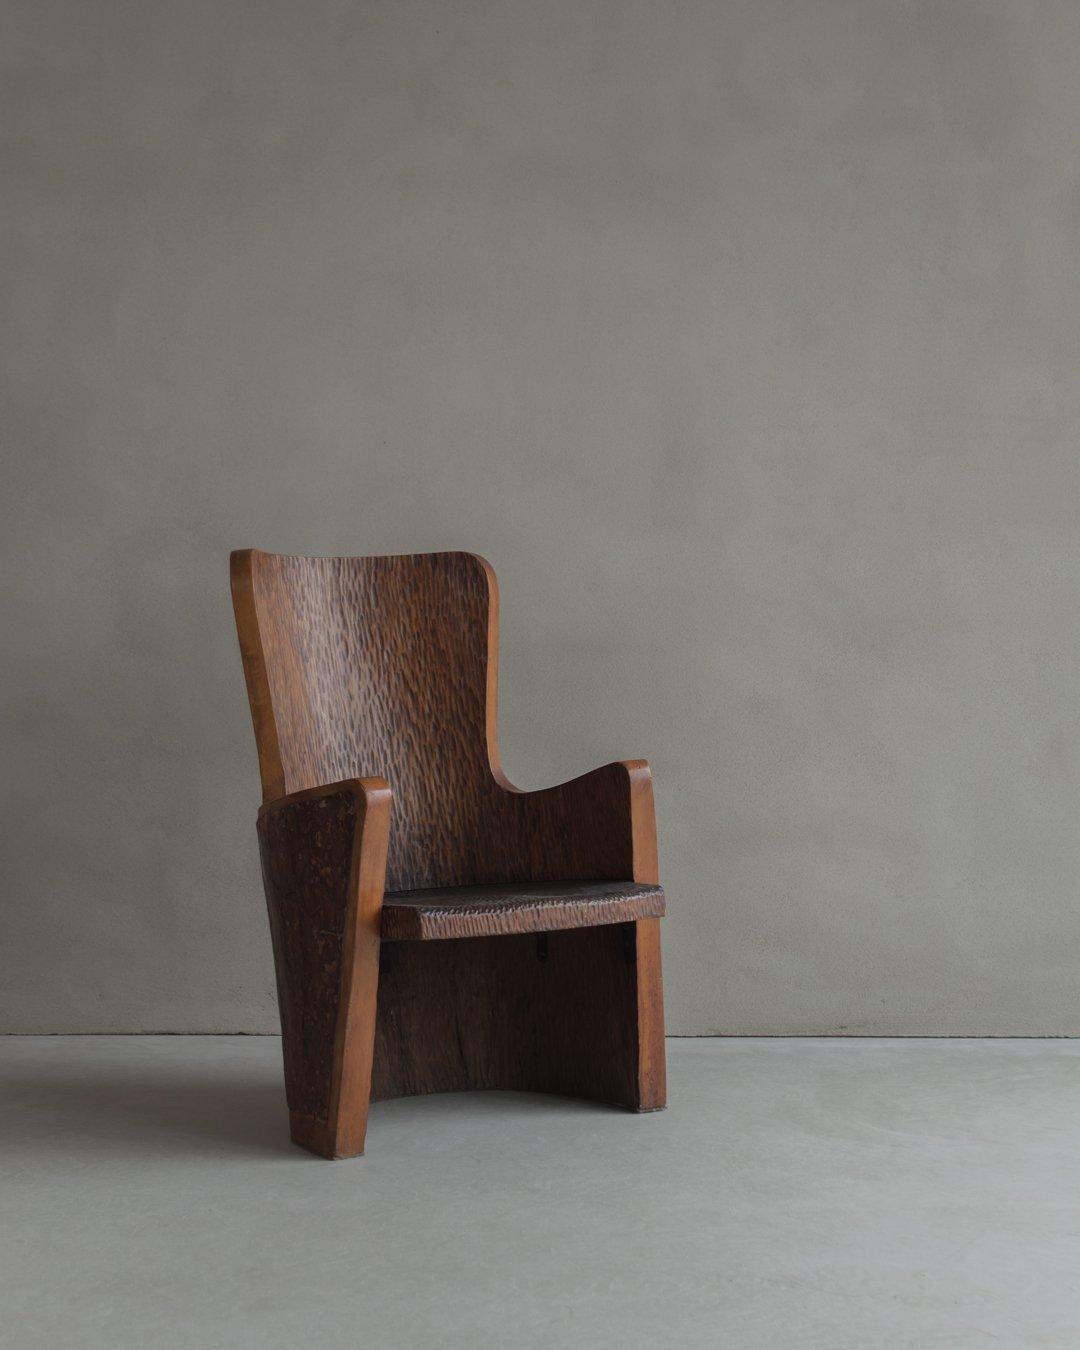 Dies ist ein einzigartiger Sessel aus dem 20. Jahrhundert, der fachmännisch von Hand aus Kiefernholz geschnitzt wurde und dessen Rückenlehne mit Naturrinde verziert ist. Dieser bezaubernde Sessel ist ein wahres Zeugnis für das Können und die